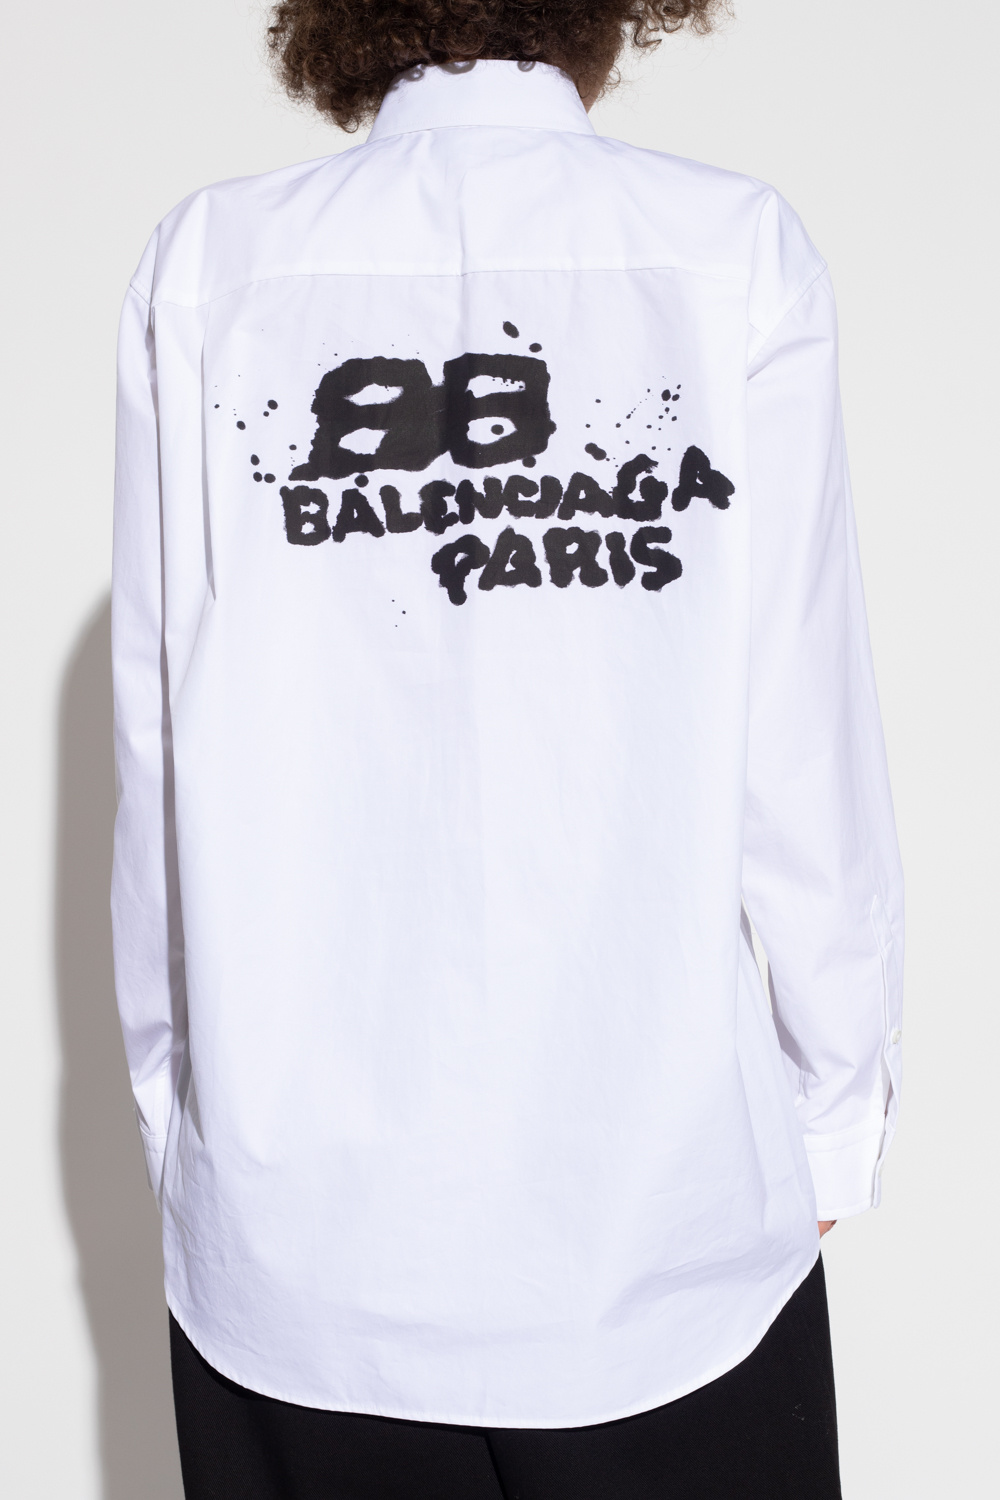 Balenciaga collection shirt with pocket